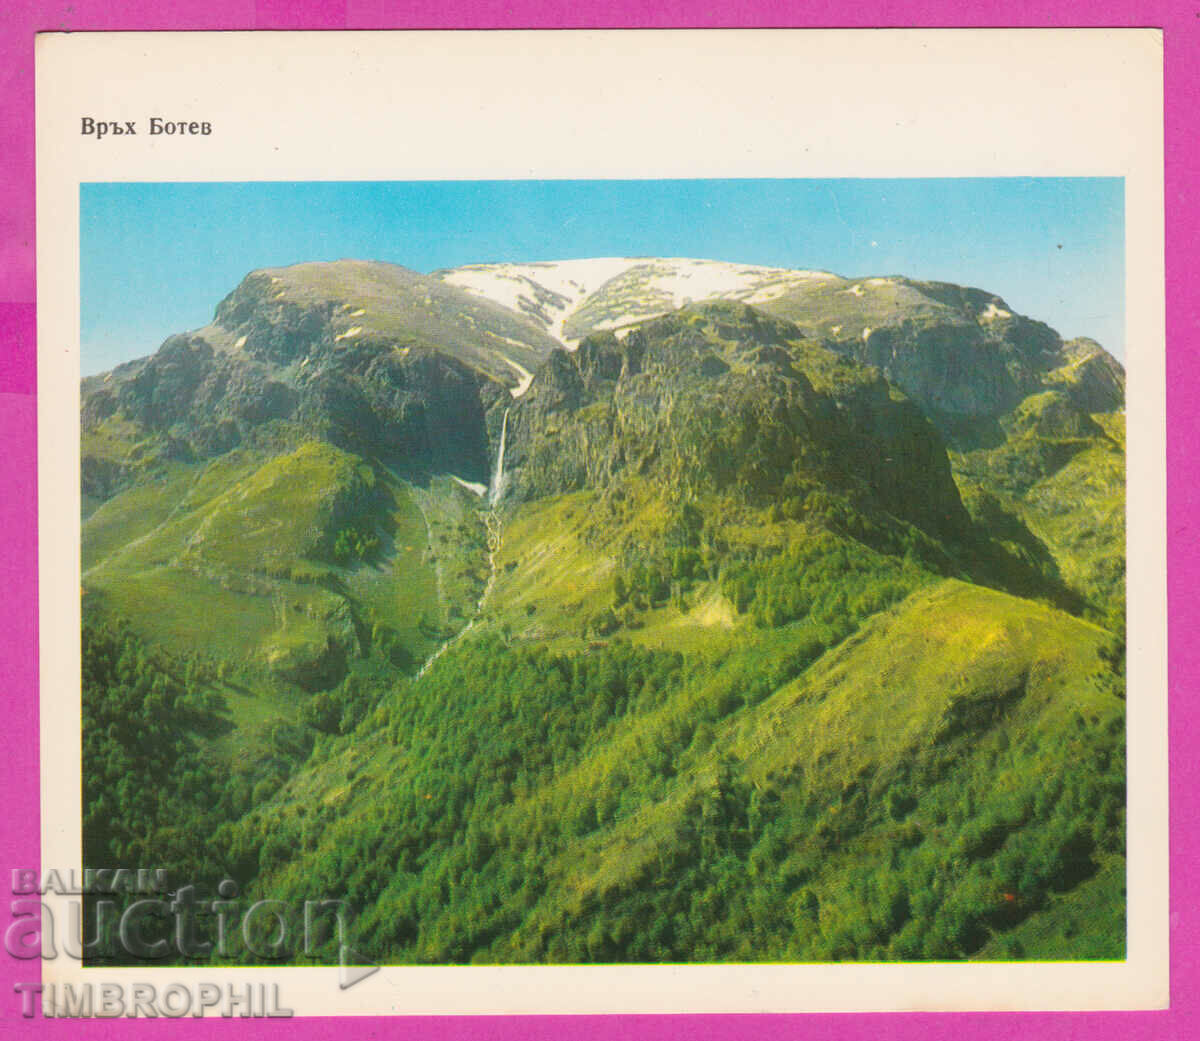 274565 / Vârful Botev este situat în Troyansko-Kaloferska planina